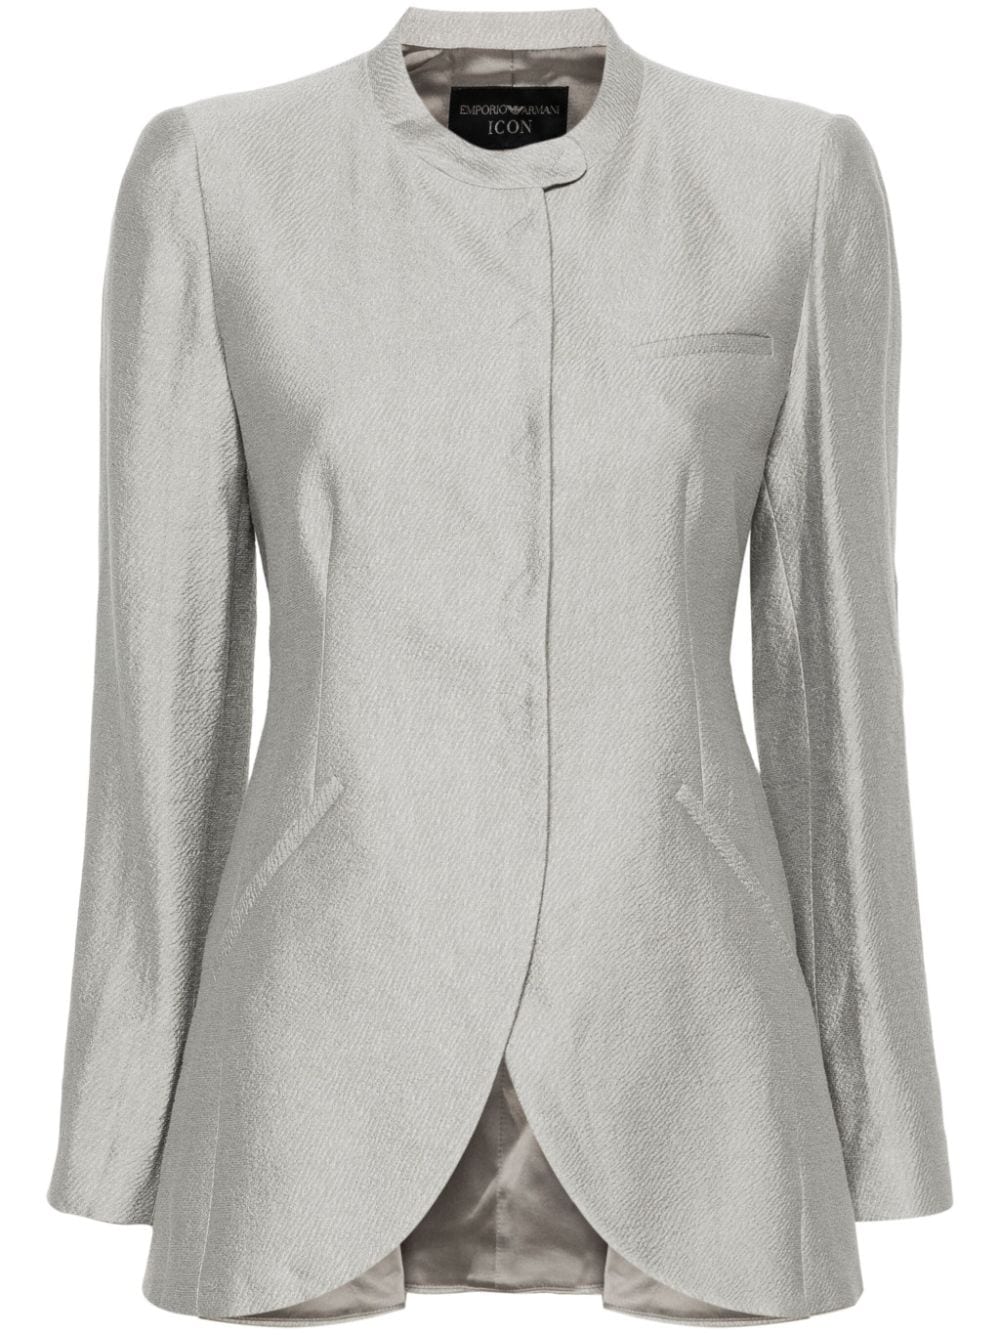 Áo Khoác Blazer Dệt Nổi Màu Xám Heather với Chi Tiết Nút và Đường May Tạo Form Dáng cho Nữ